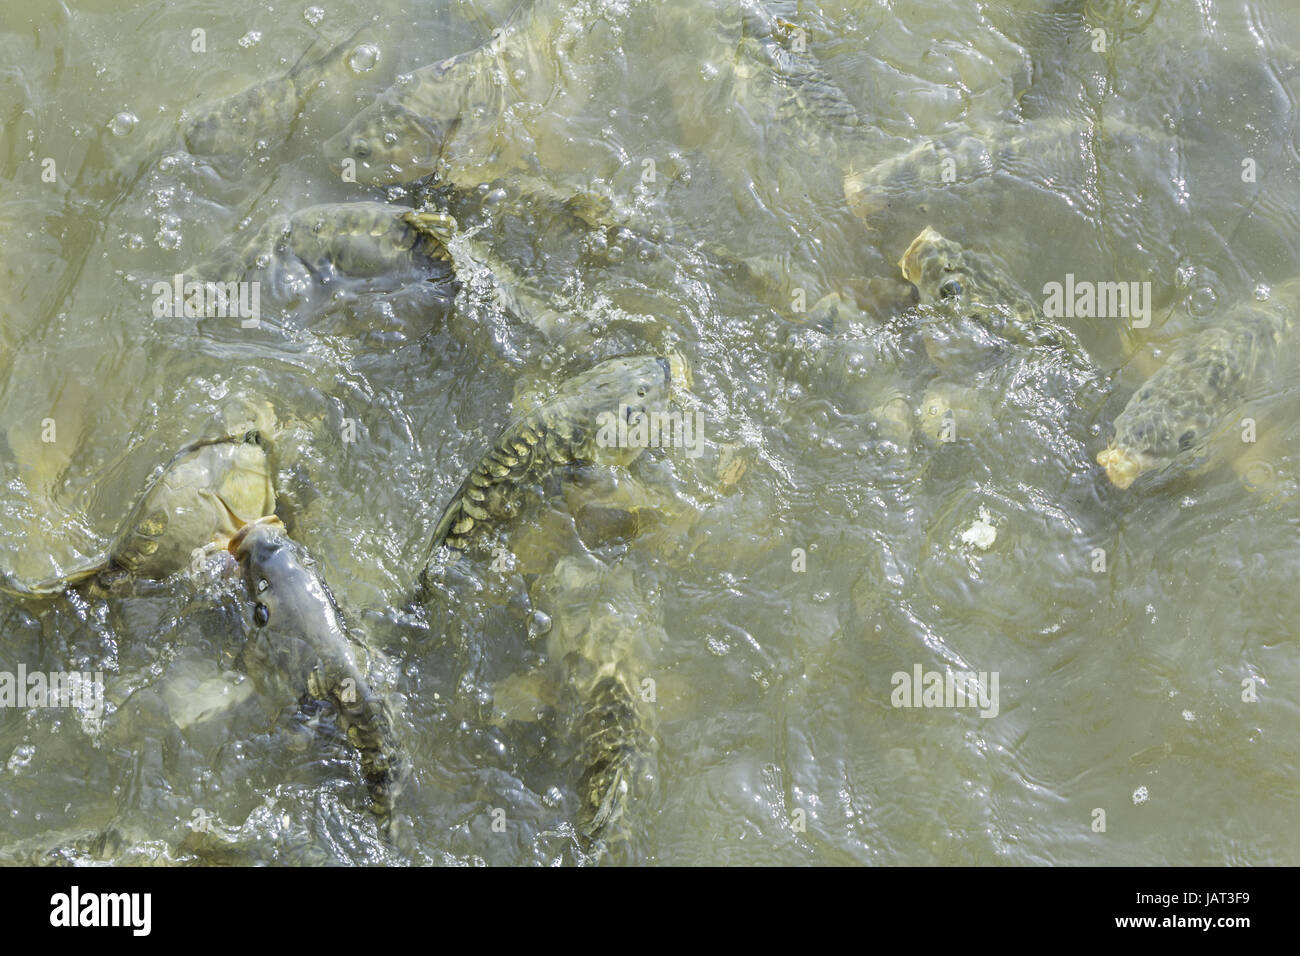 Karpfen schwimmen im Fluss Schlamm, Tiere und Natur Stockfoto